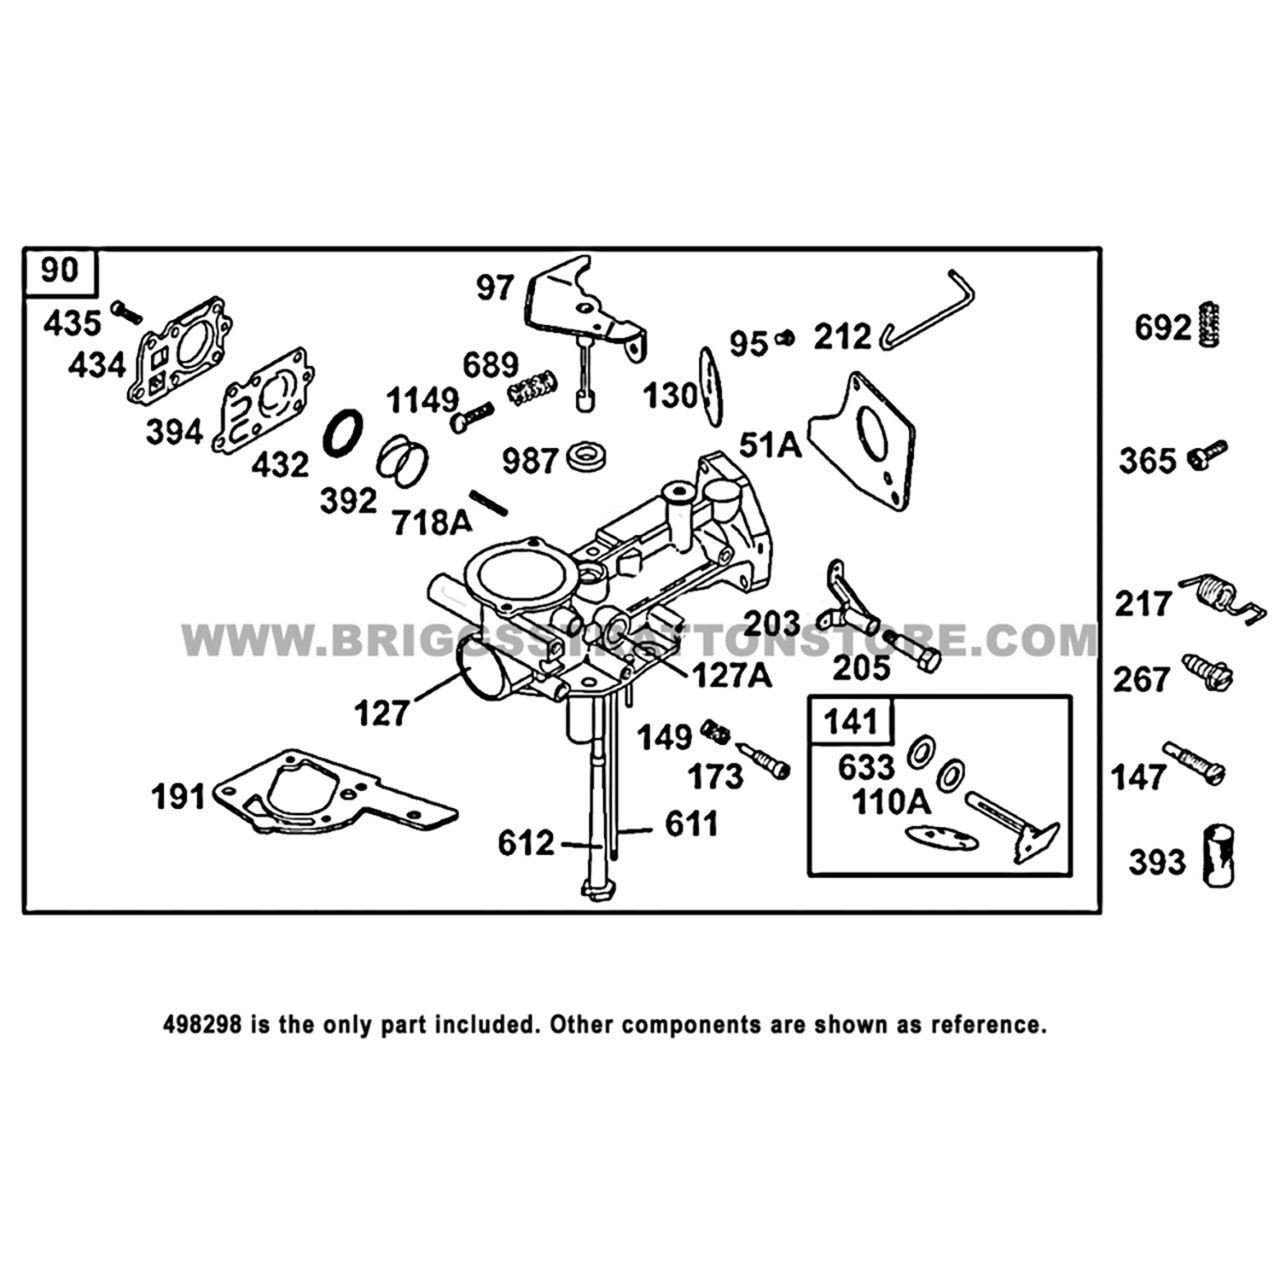 Carburetor Fit For Briggs Stratton 498298 [hidden information]51 [hidden  information]33 495426 US - Car Engines & Engine Parts - Los Angeles,  California